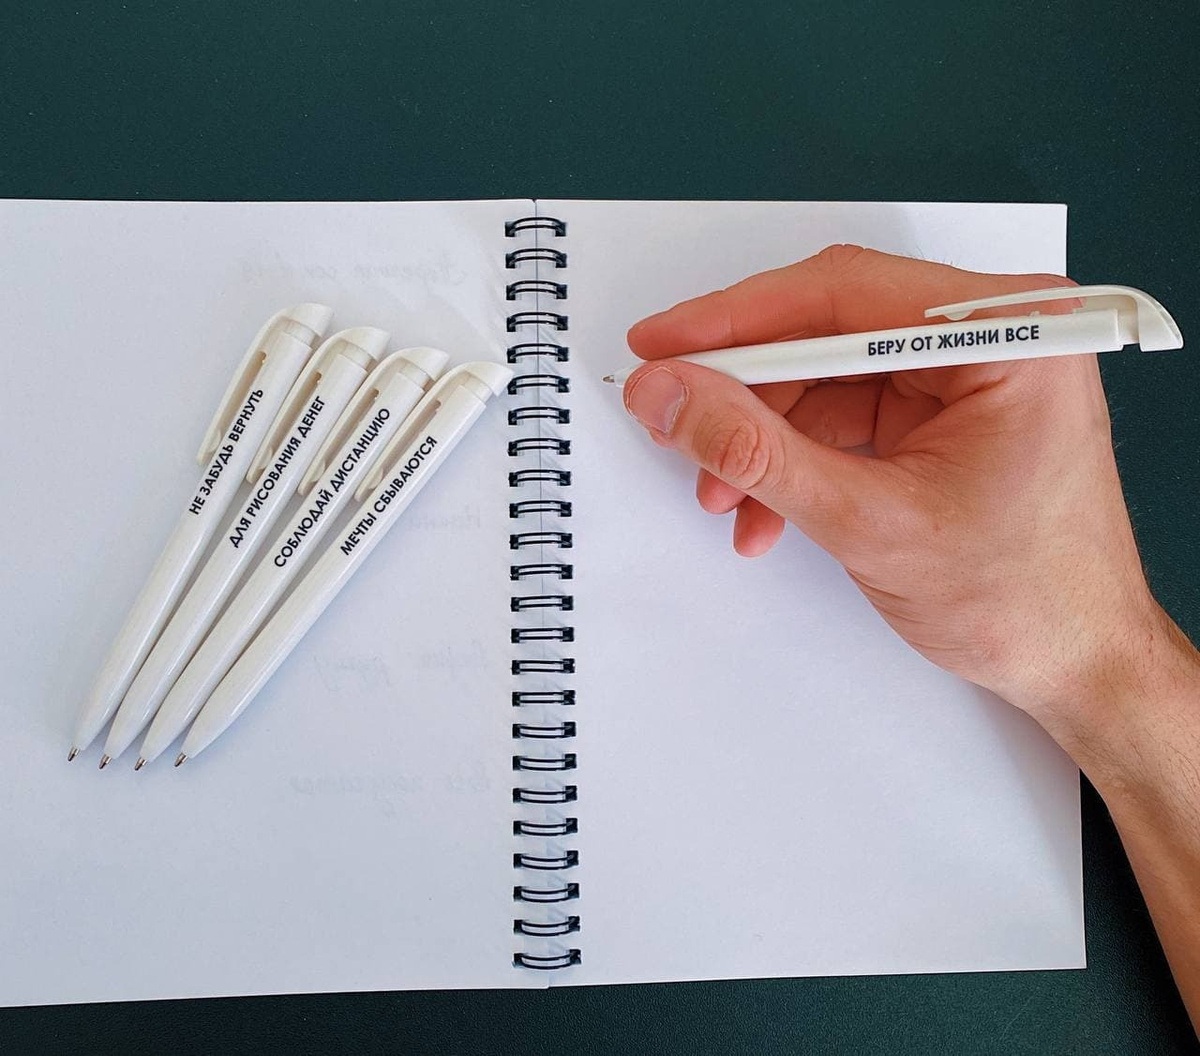 Шариковые ручки с надписями в подарок , для школы